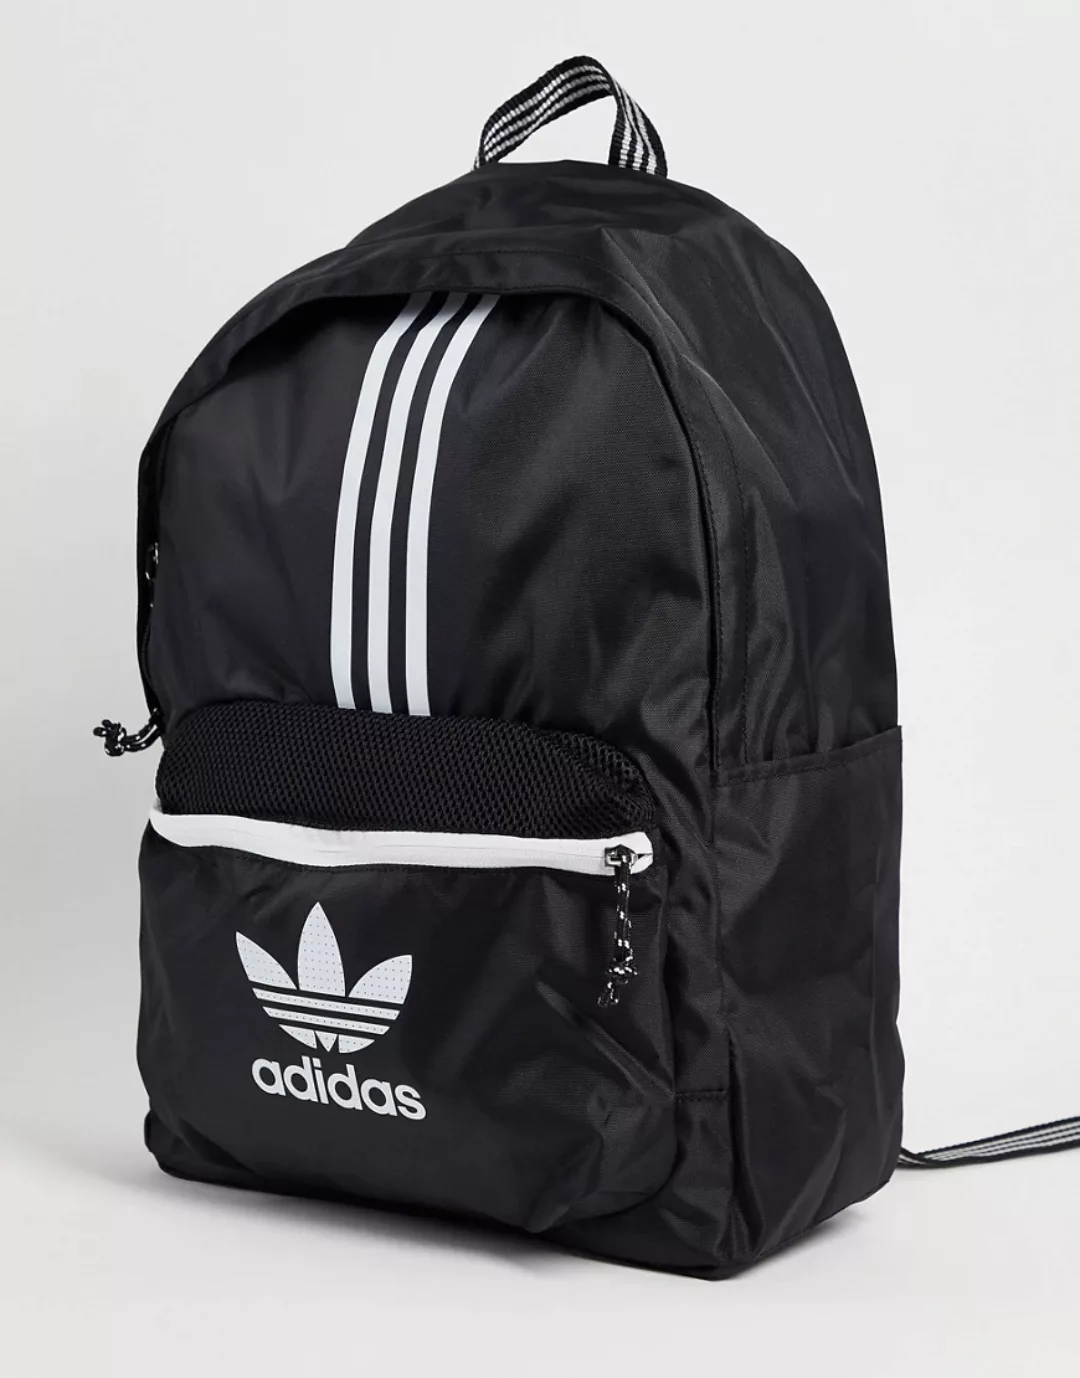 Adidas Originals Rucksack One Size Black / White günstig online kaufen